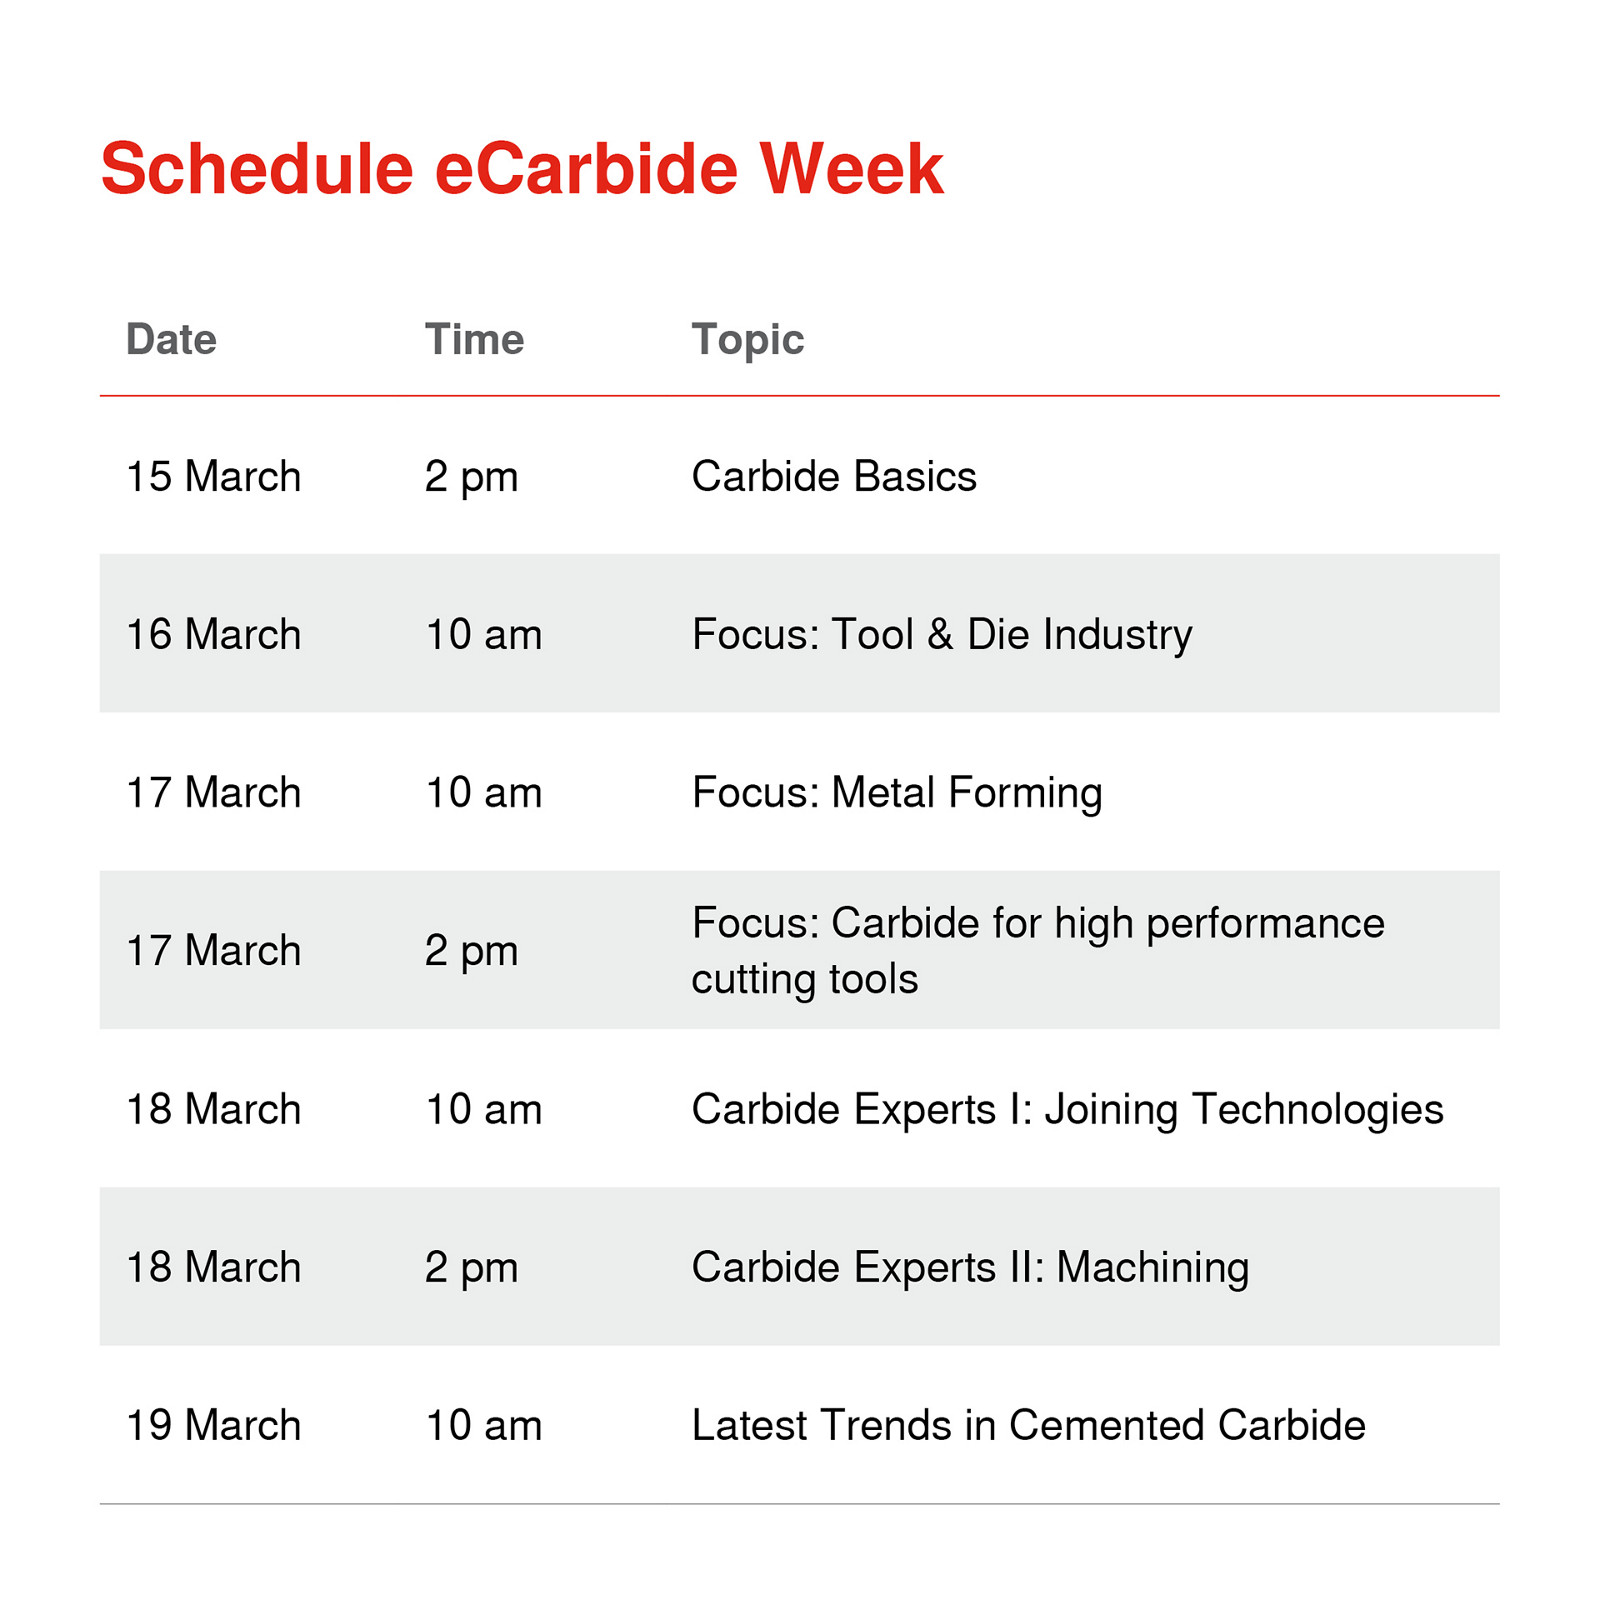 Schedule eCarbide Week